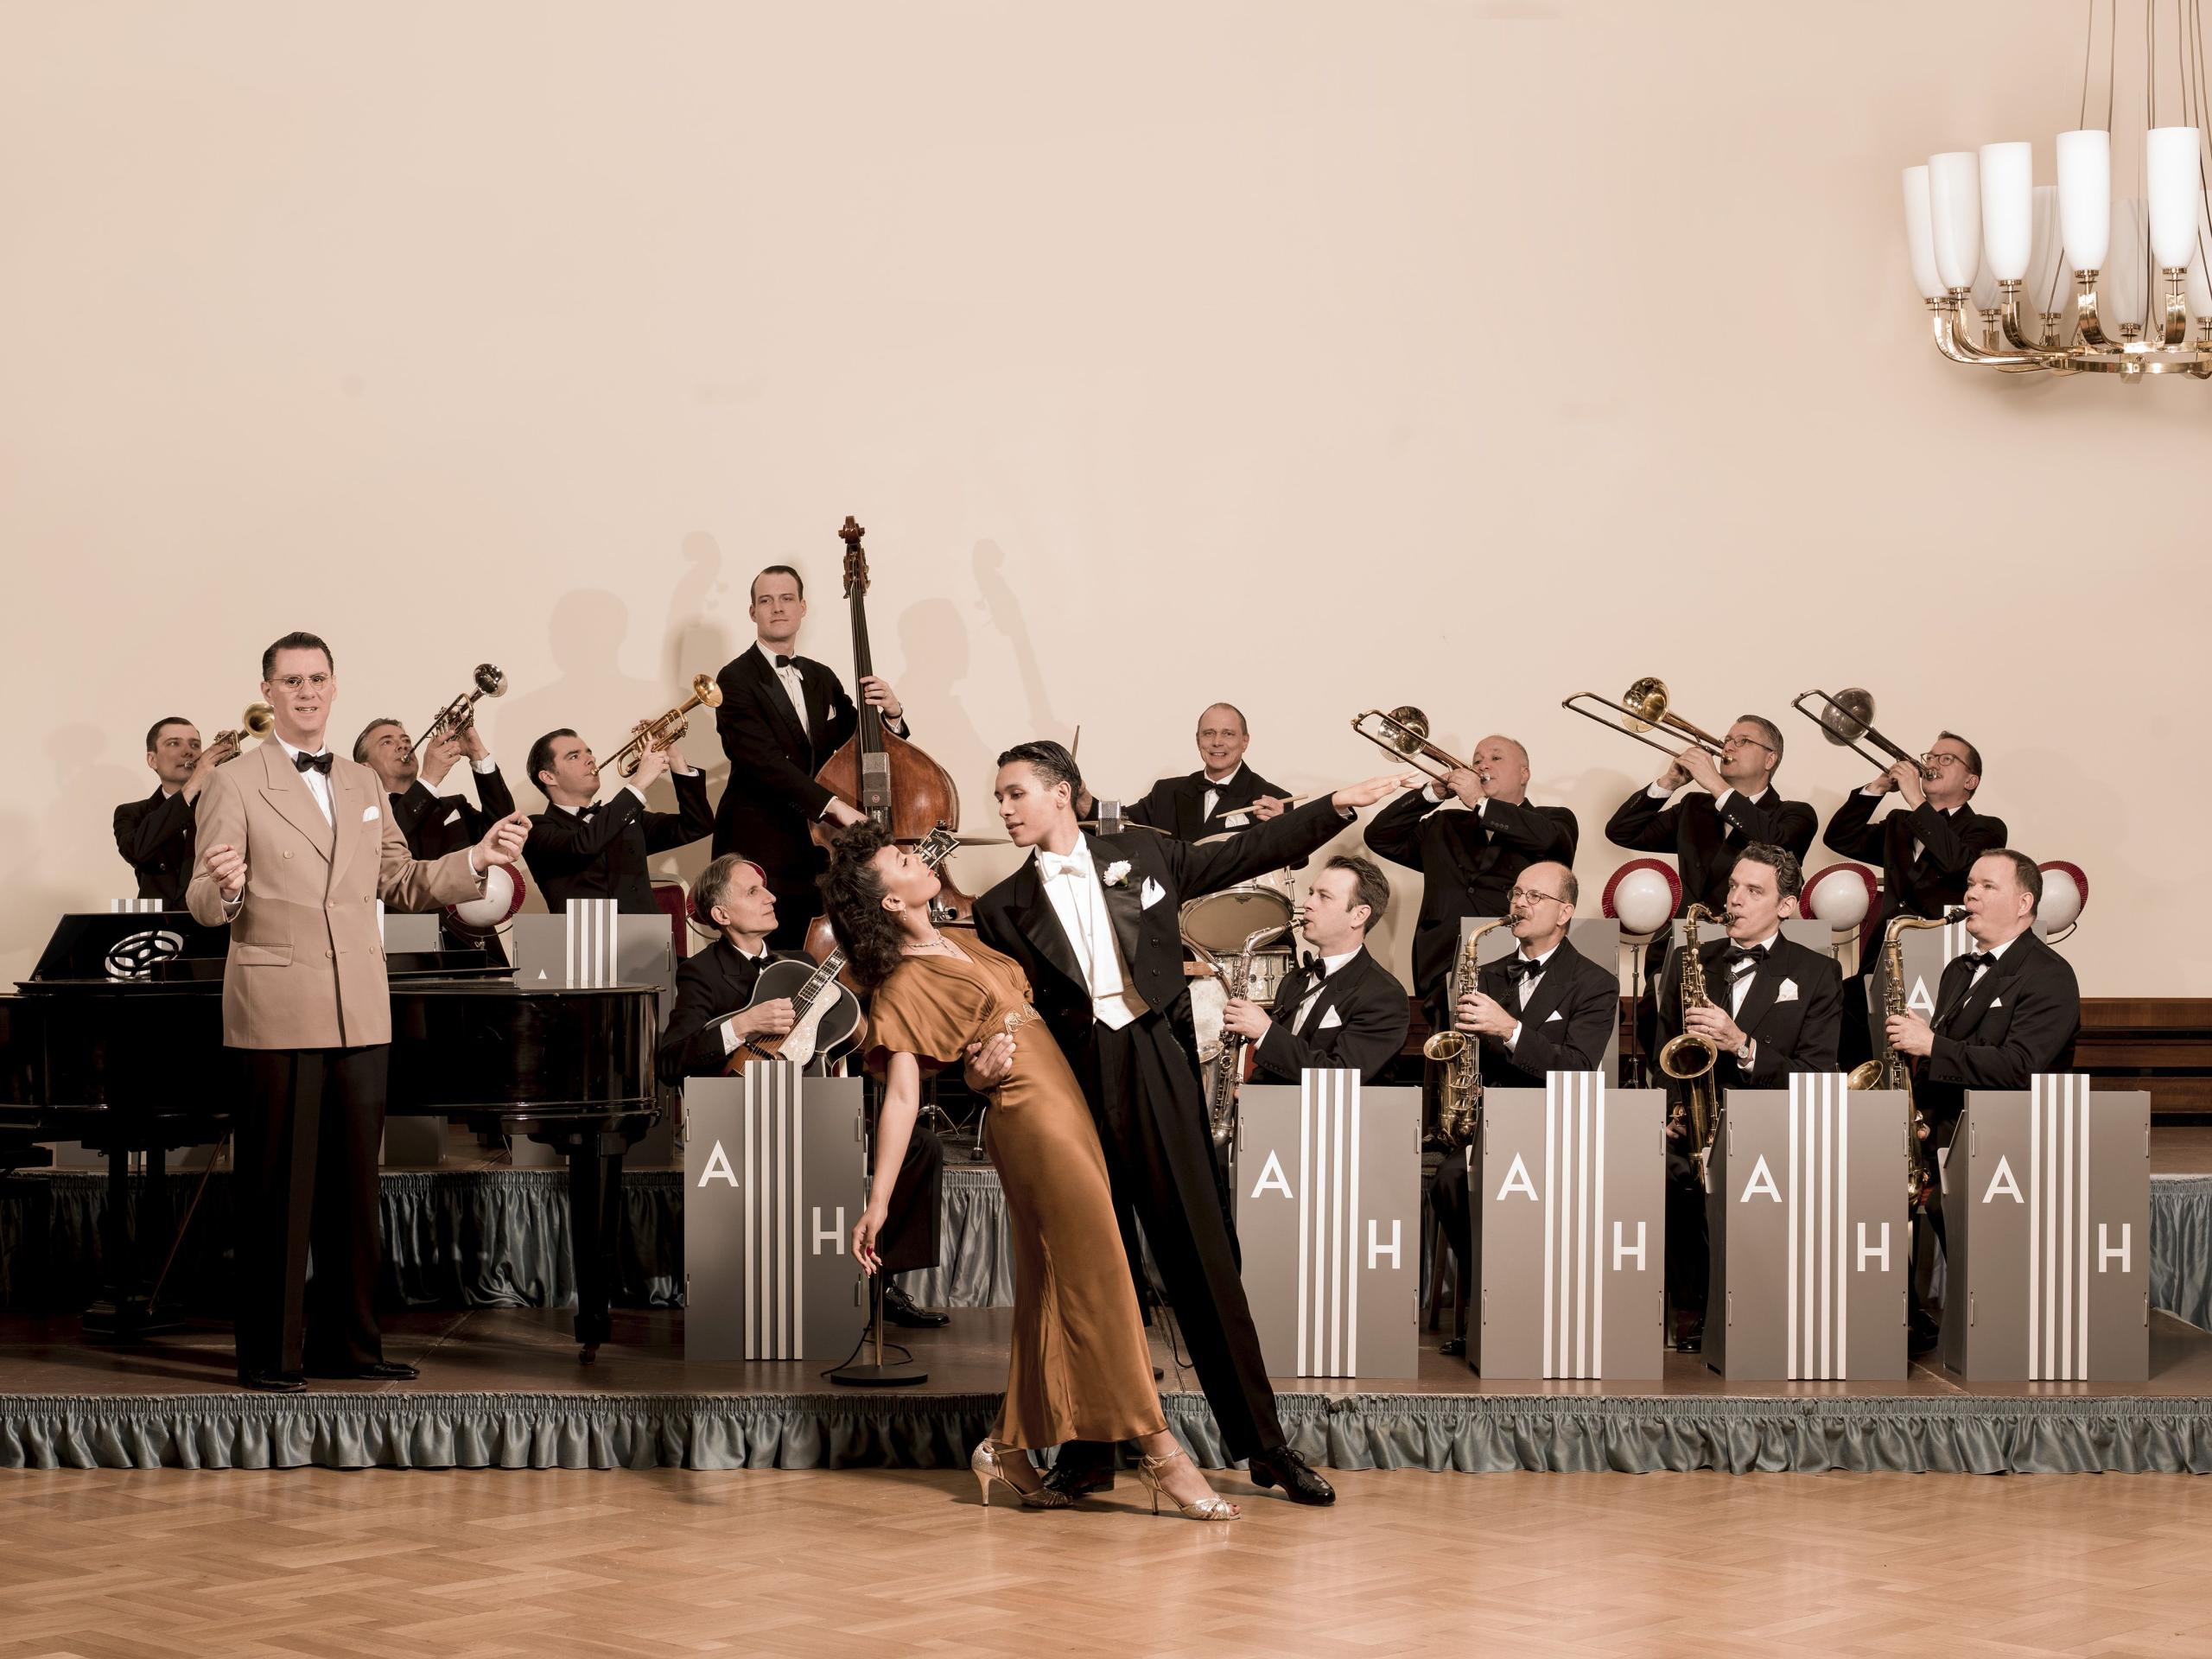 Ein Tanzpaar steht in einer eleganten Pose vor einer Bigband.